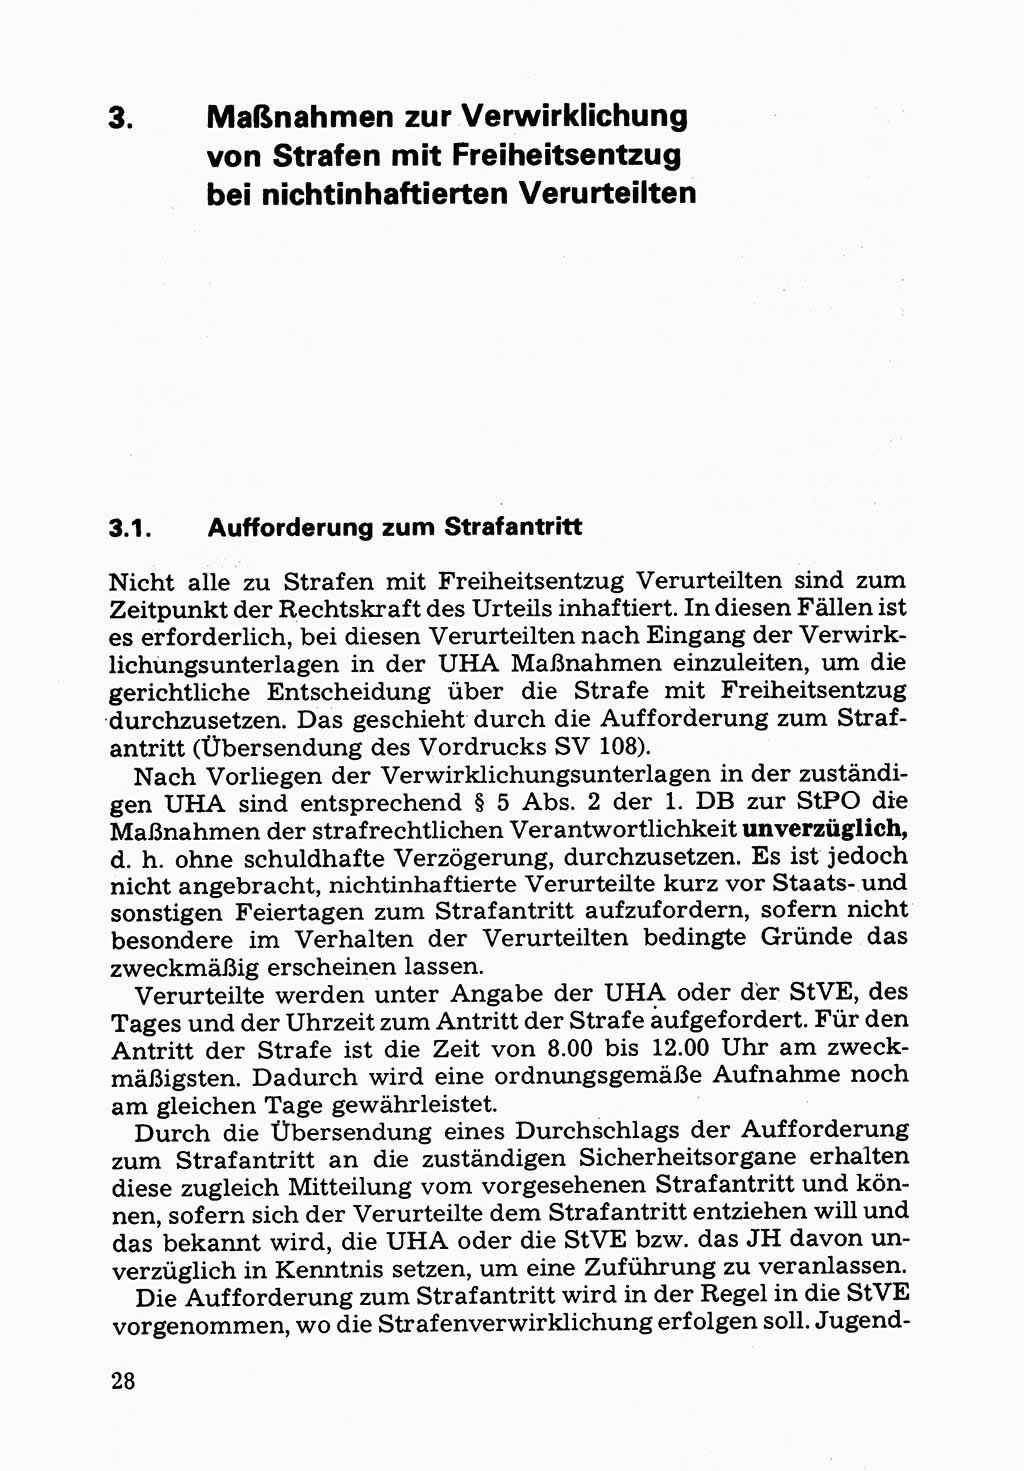 Verwaltungsmäßige Aufgaben beim Vollzug der Untersuchungshaft (U-Haft) sowie der Strafen mit Freiheitsentzug (SV) [Deutsche Demokratische Republik (DDR)] 1980, Seite 28 (Aufg. Vollz. U-Haft SV DDR 1980, S. 28)